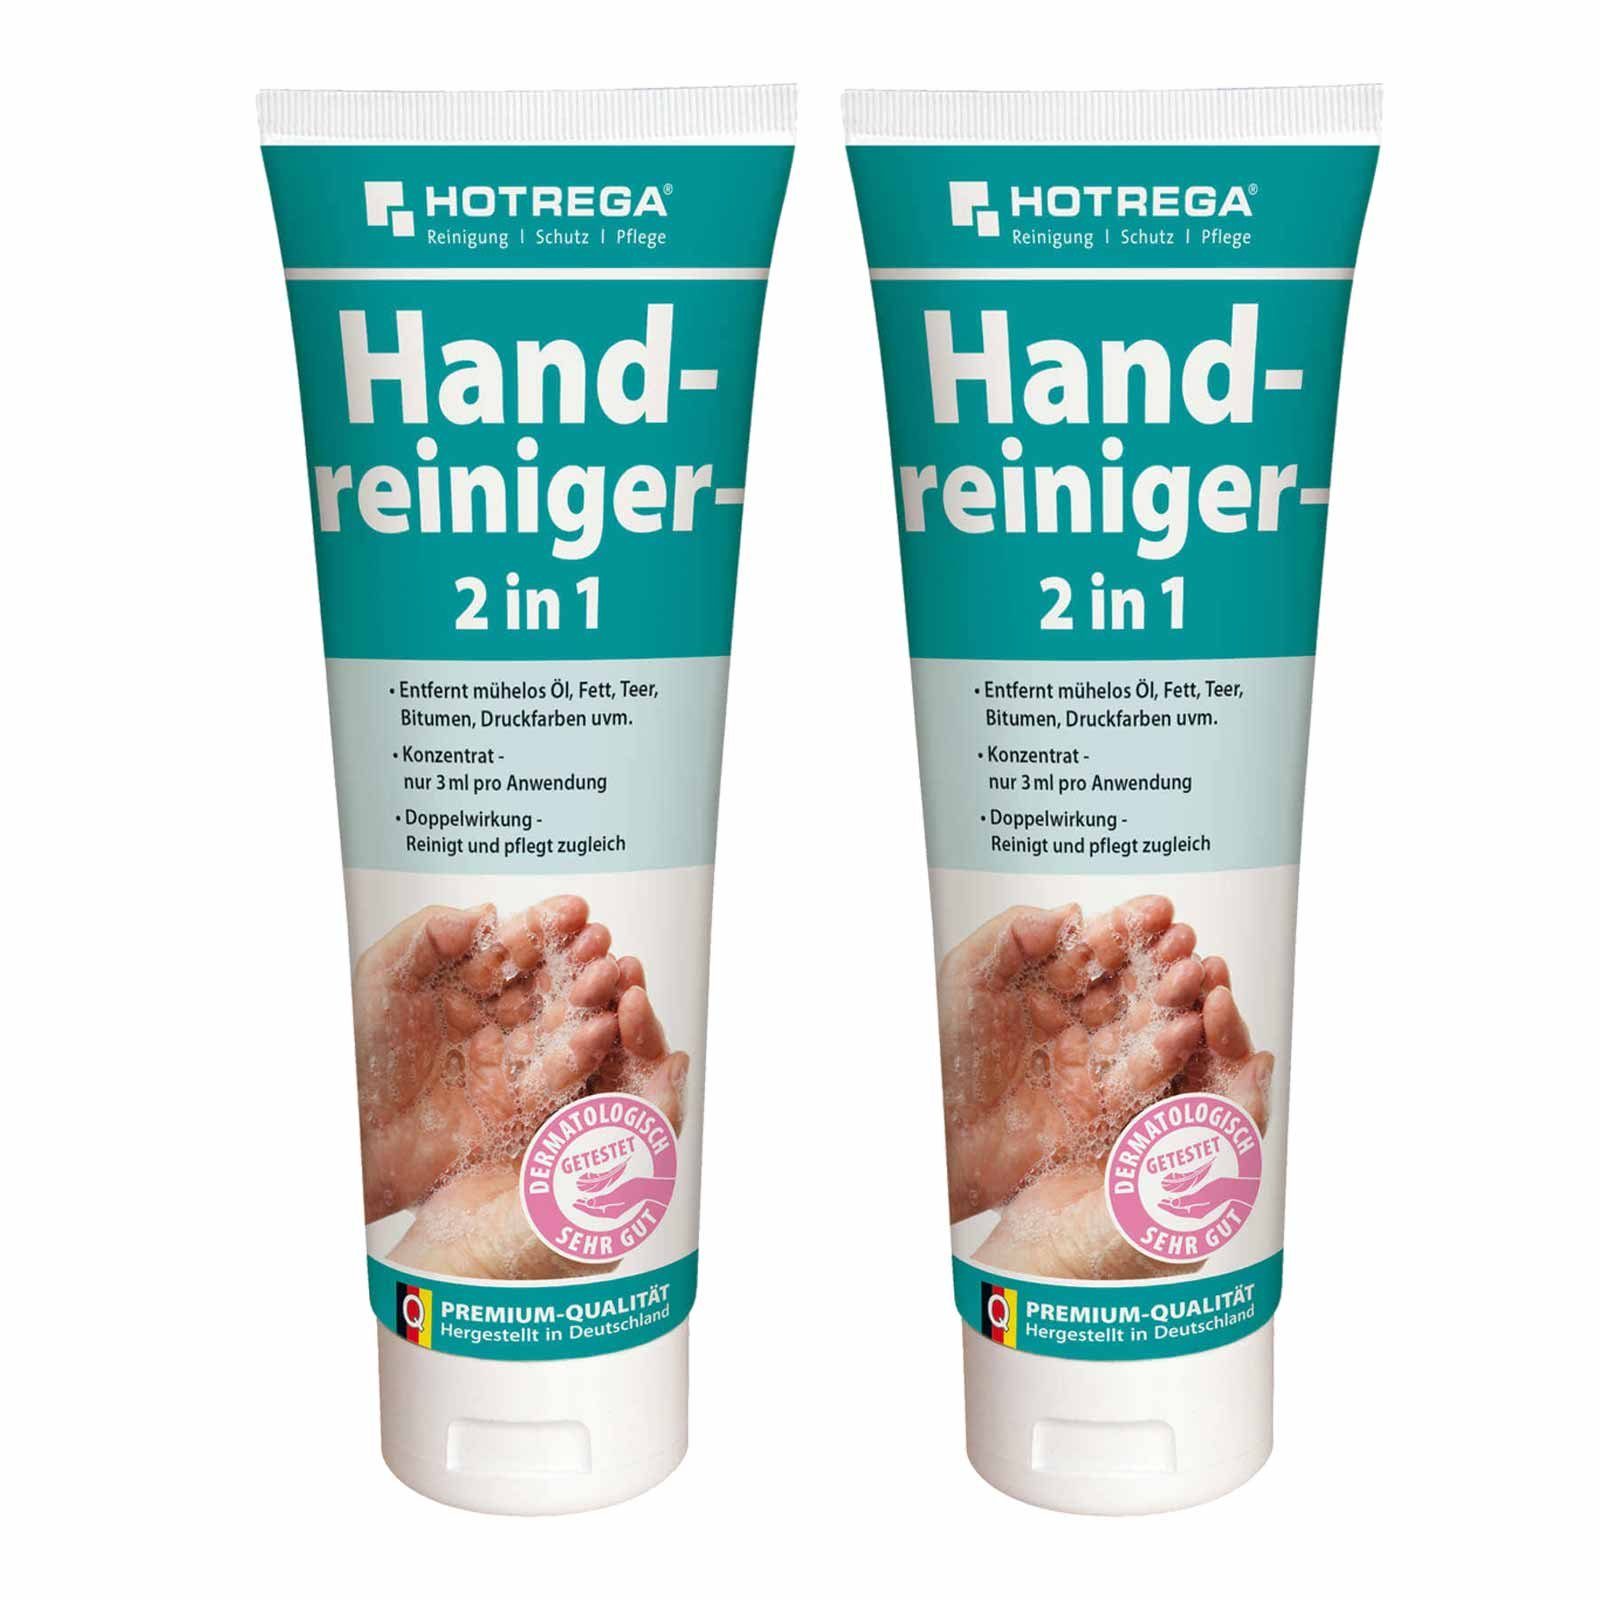 2x250ml Waschpaste HOTREGA® Handpflege Hautpflege Handwaschpaste Handcreme Handreiniger